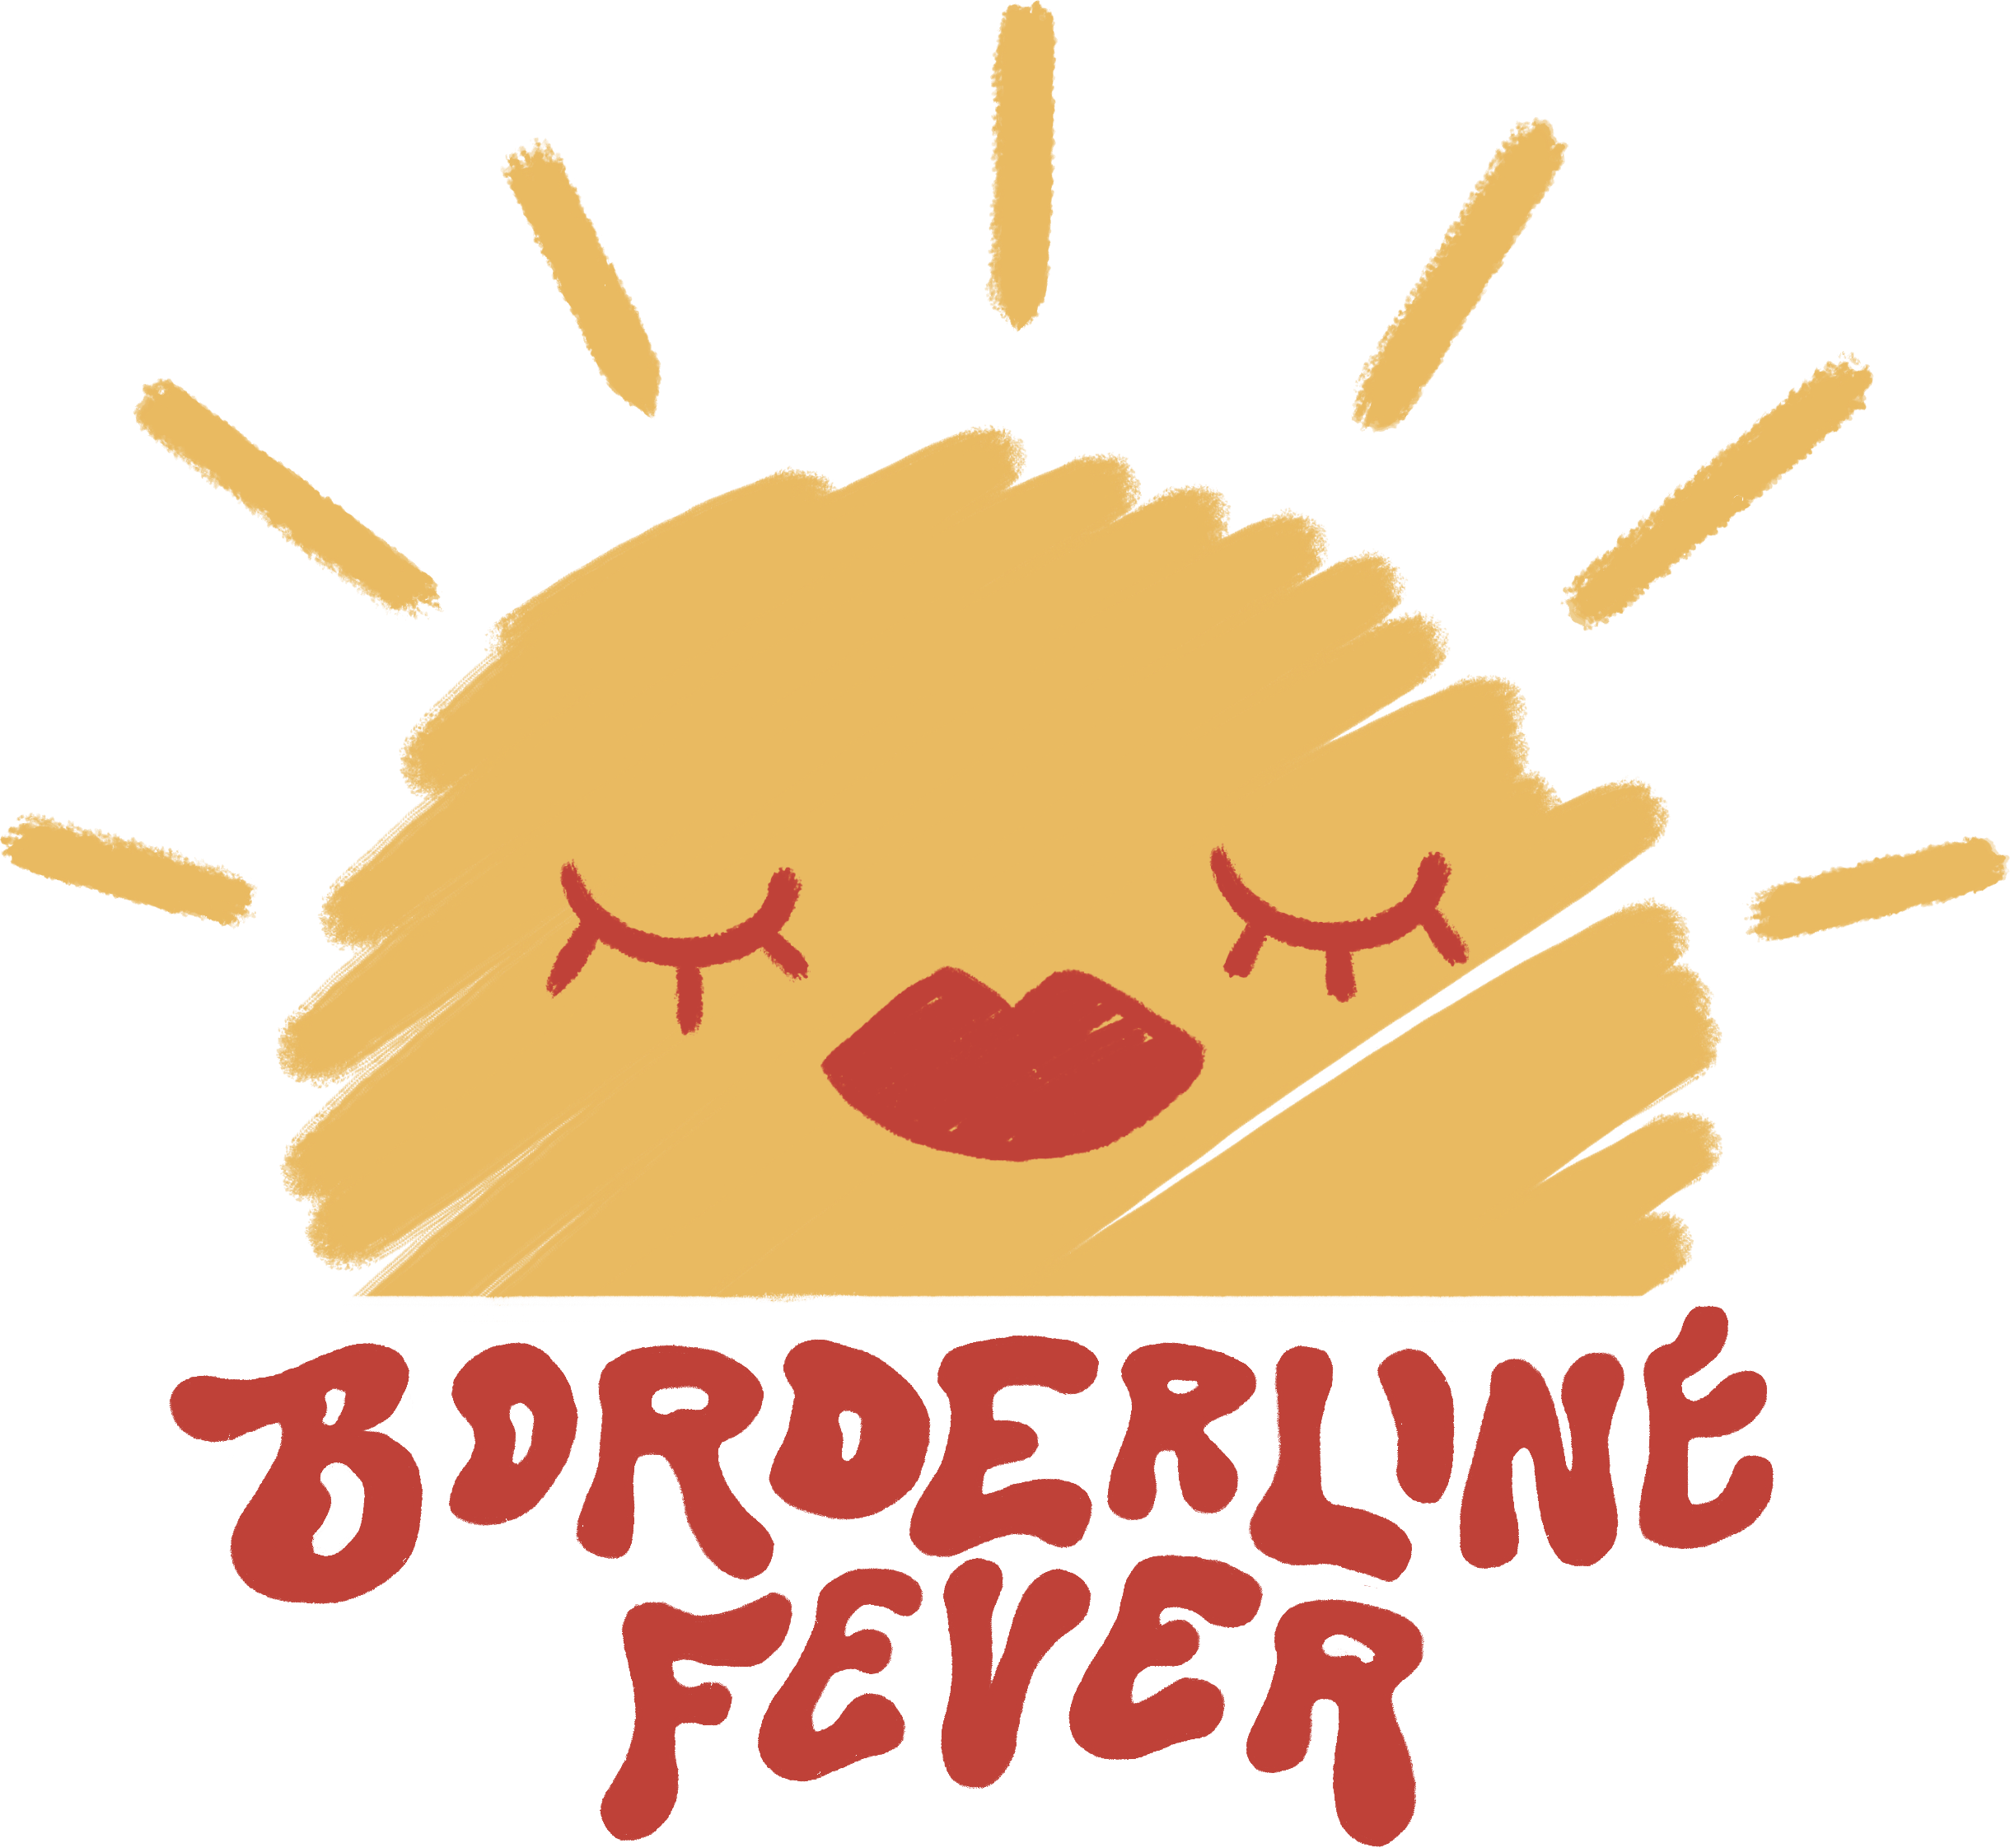 The Borderline Fever logo.